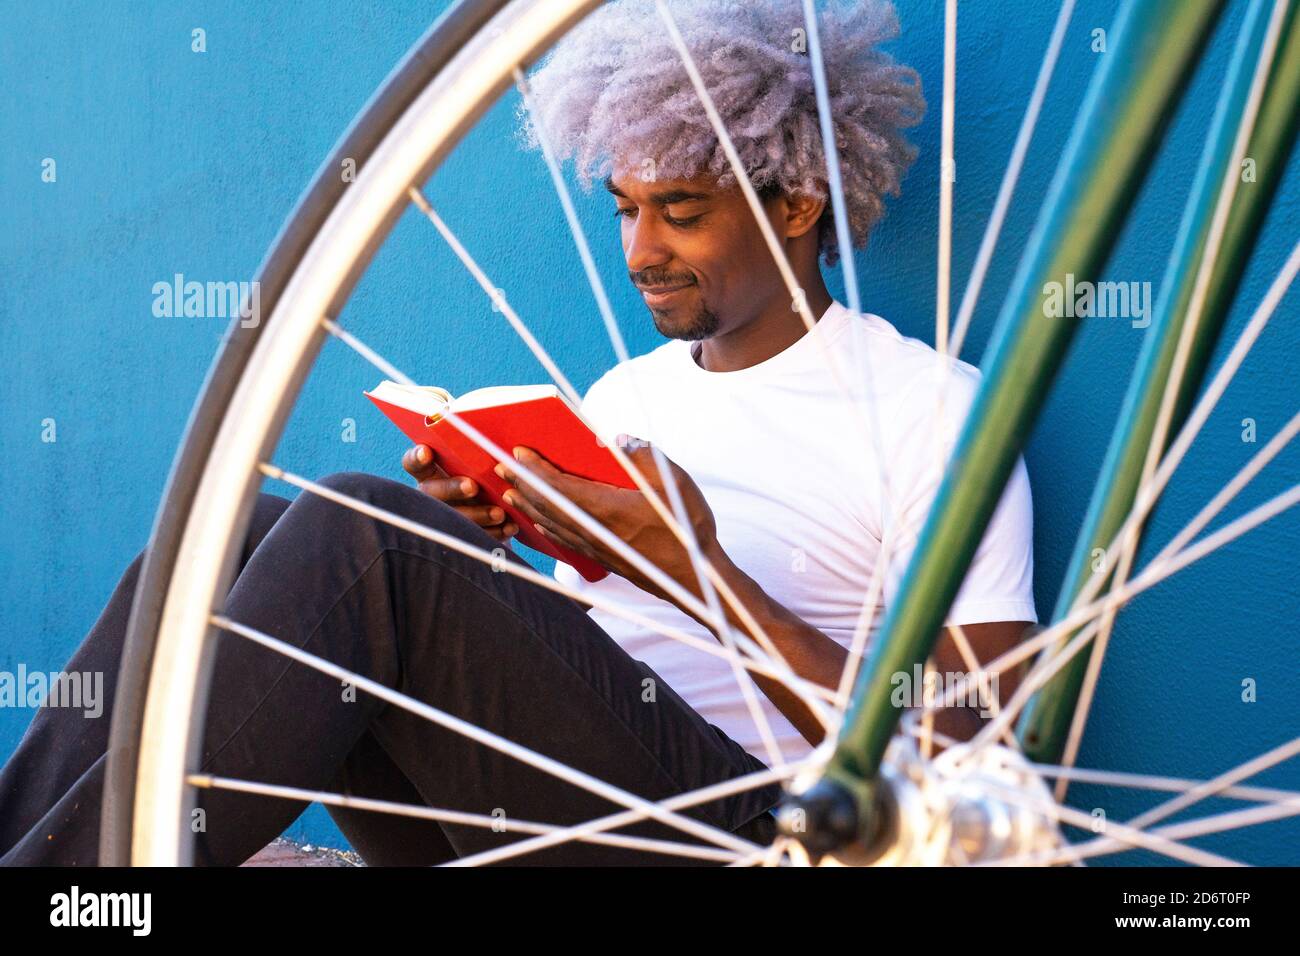 Schwarz und afro Mann liest ein Buch neben seinem Fahrrad. Konzept des schwarzen Mannes, der ein Buch liest. Stockfoto